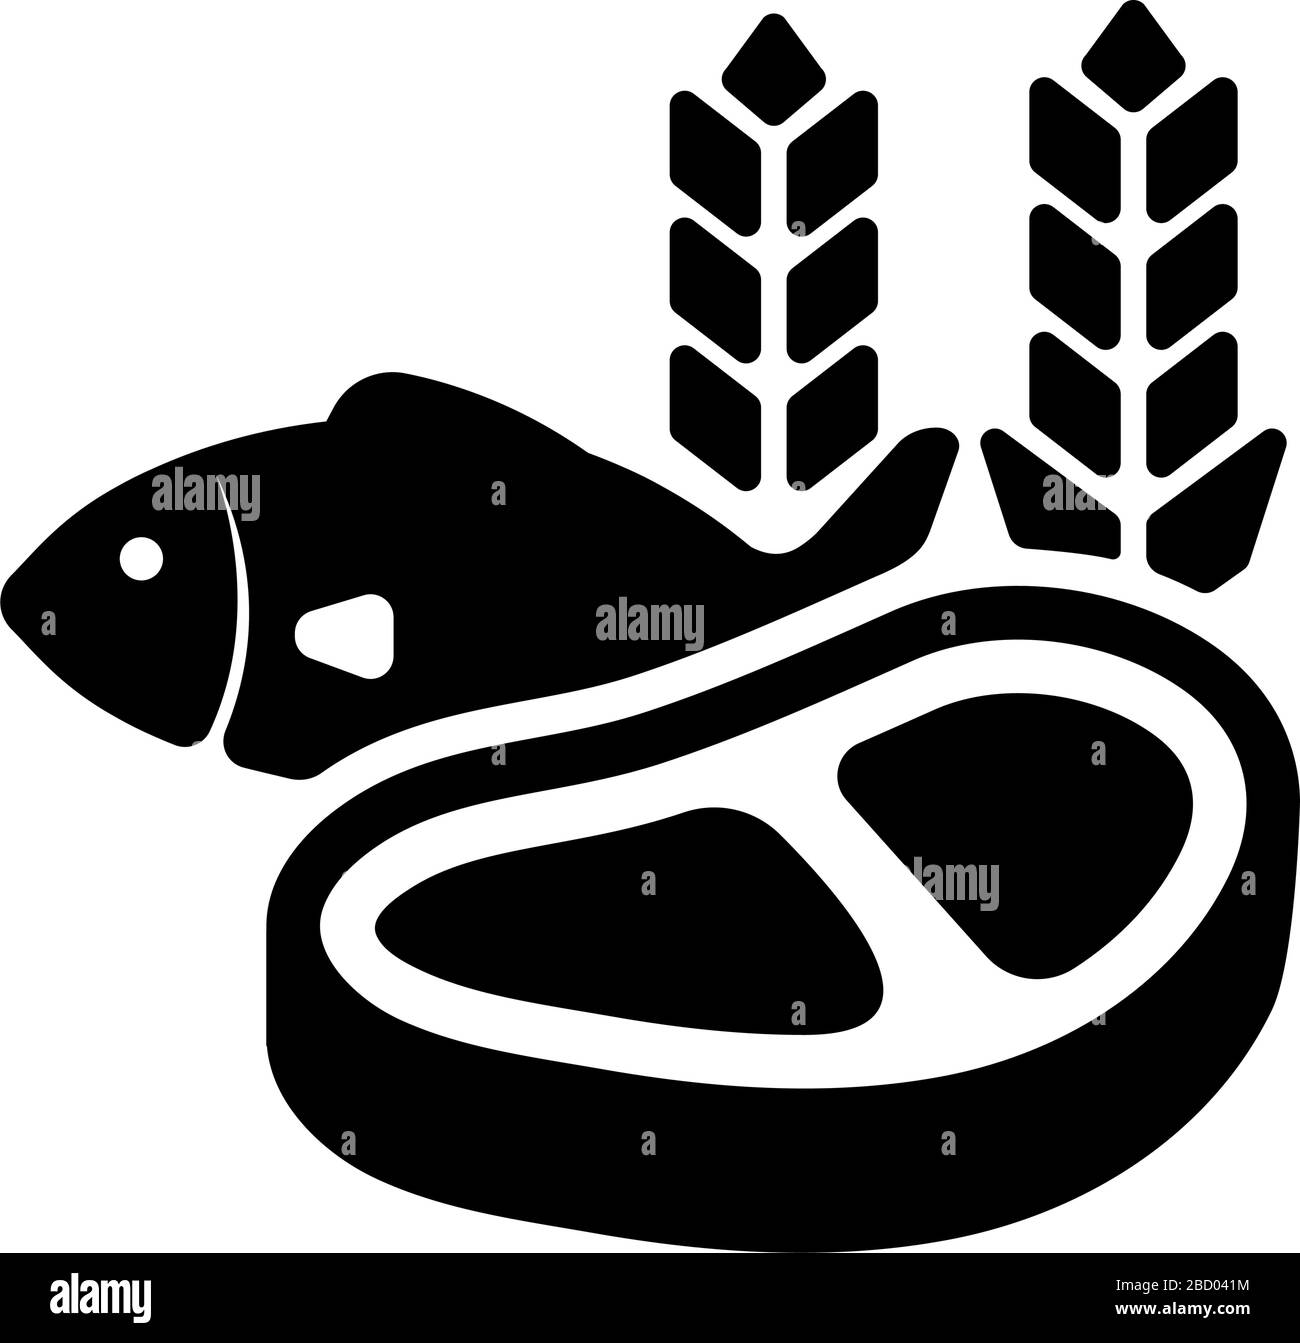 Lebensmittel, verschiedene Lebensmittel (Fleisch, Fisch, Getreide) Symbol Stock Vektor